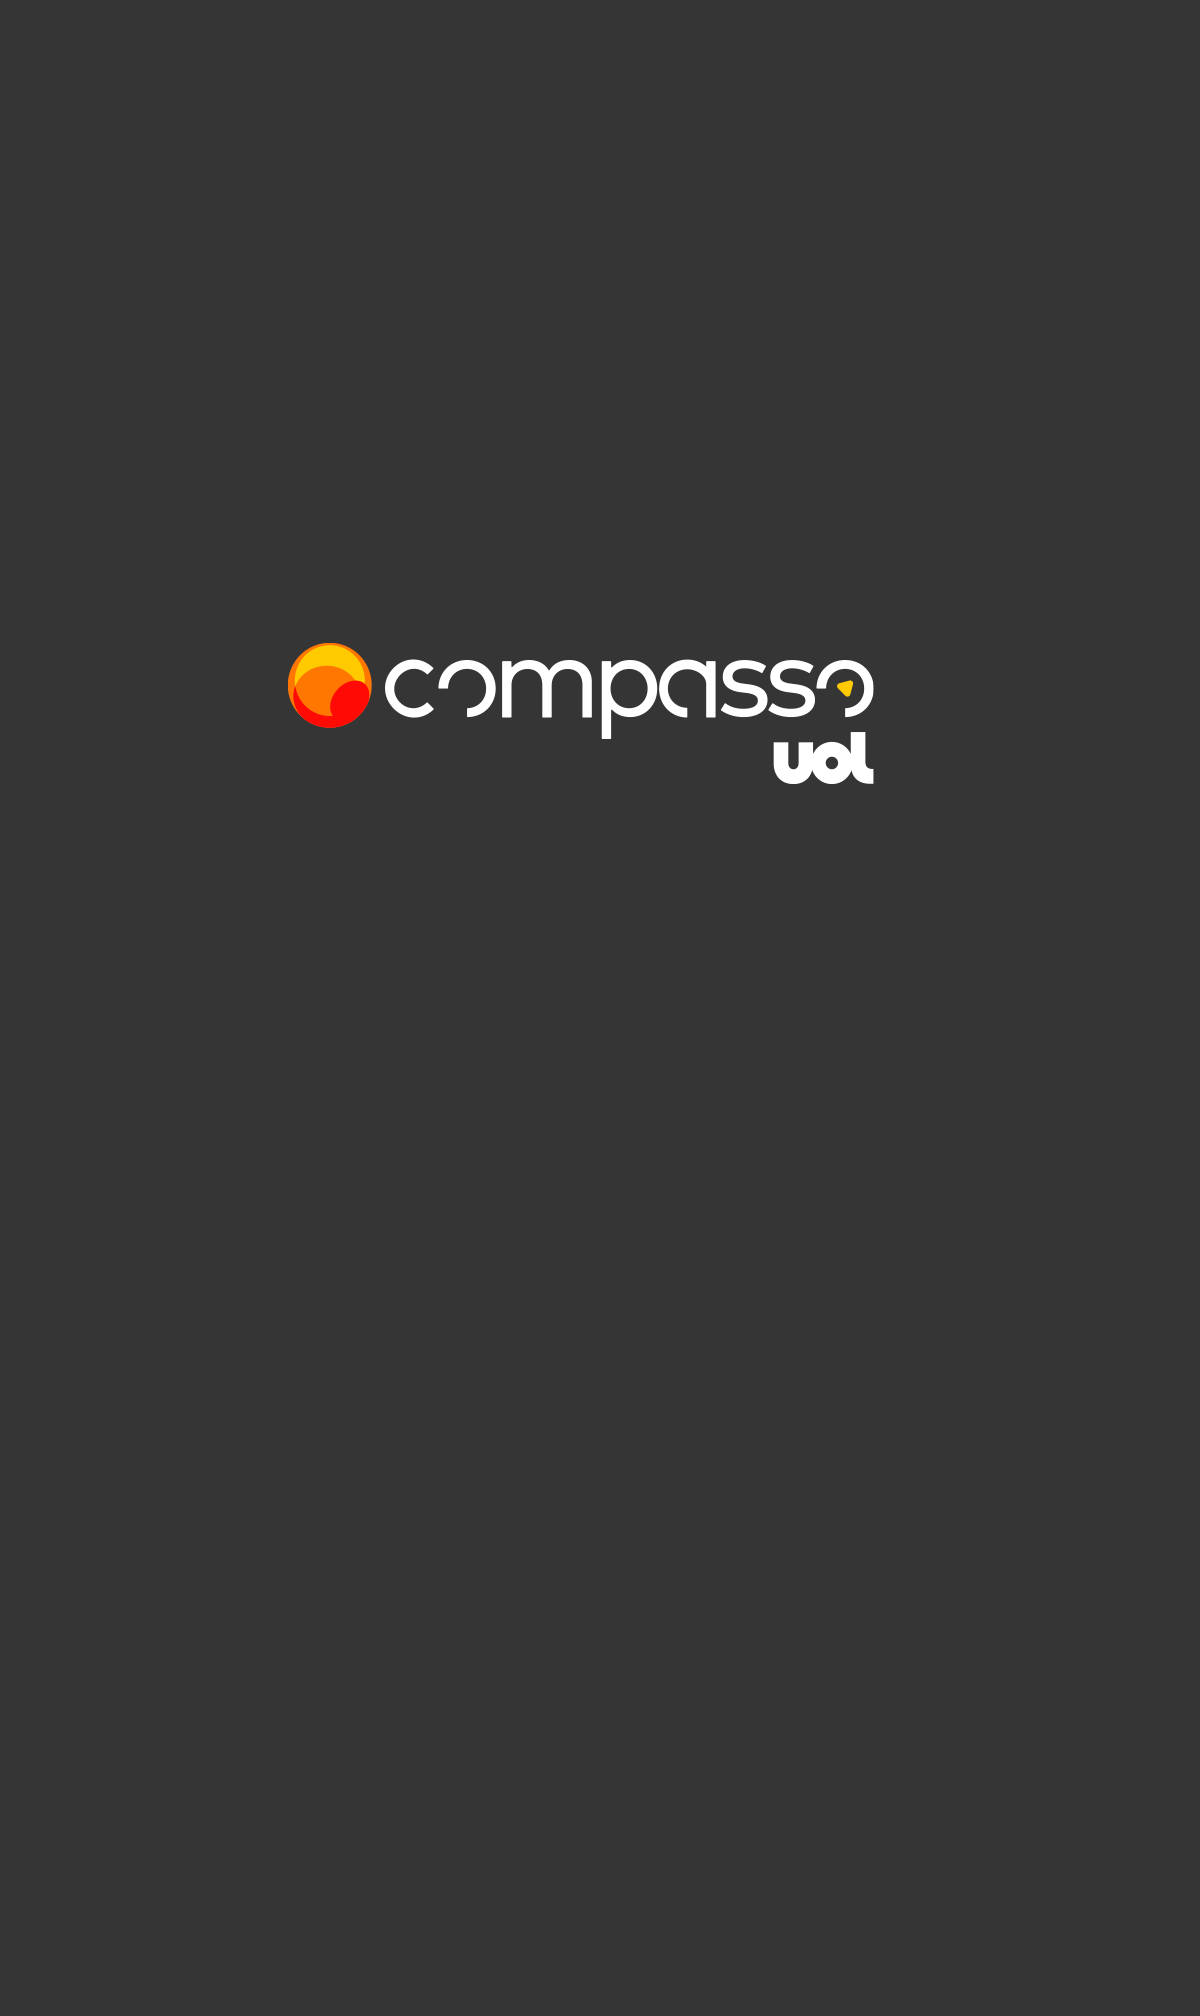 logos_compasso2